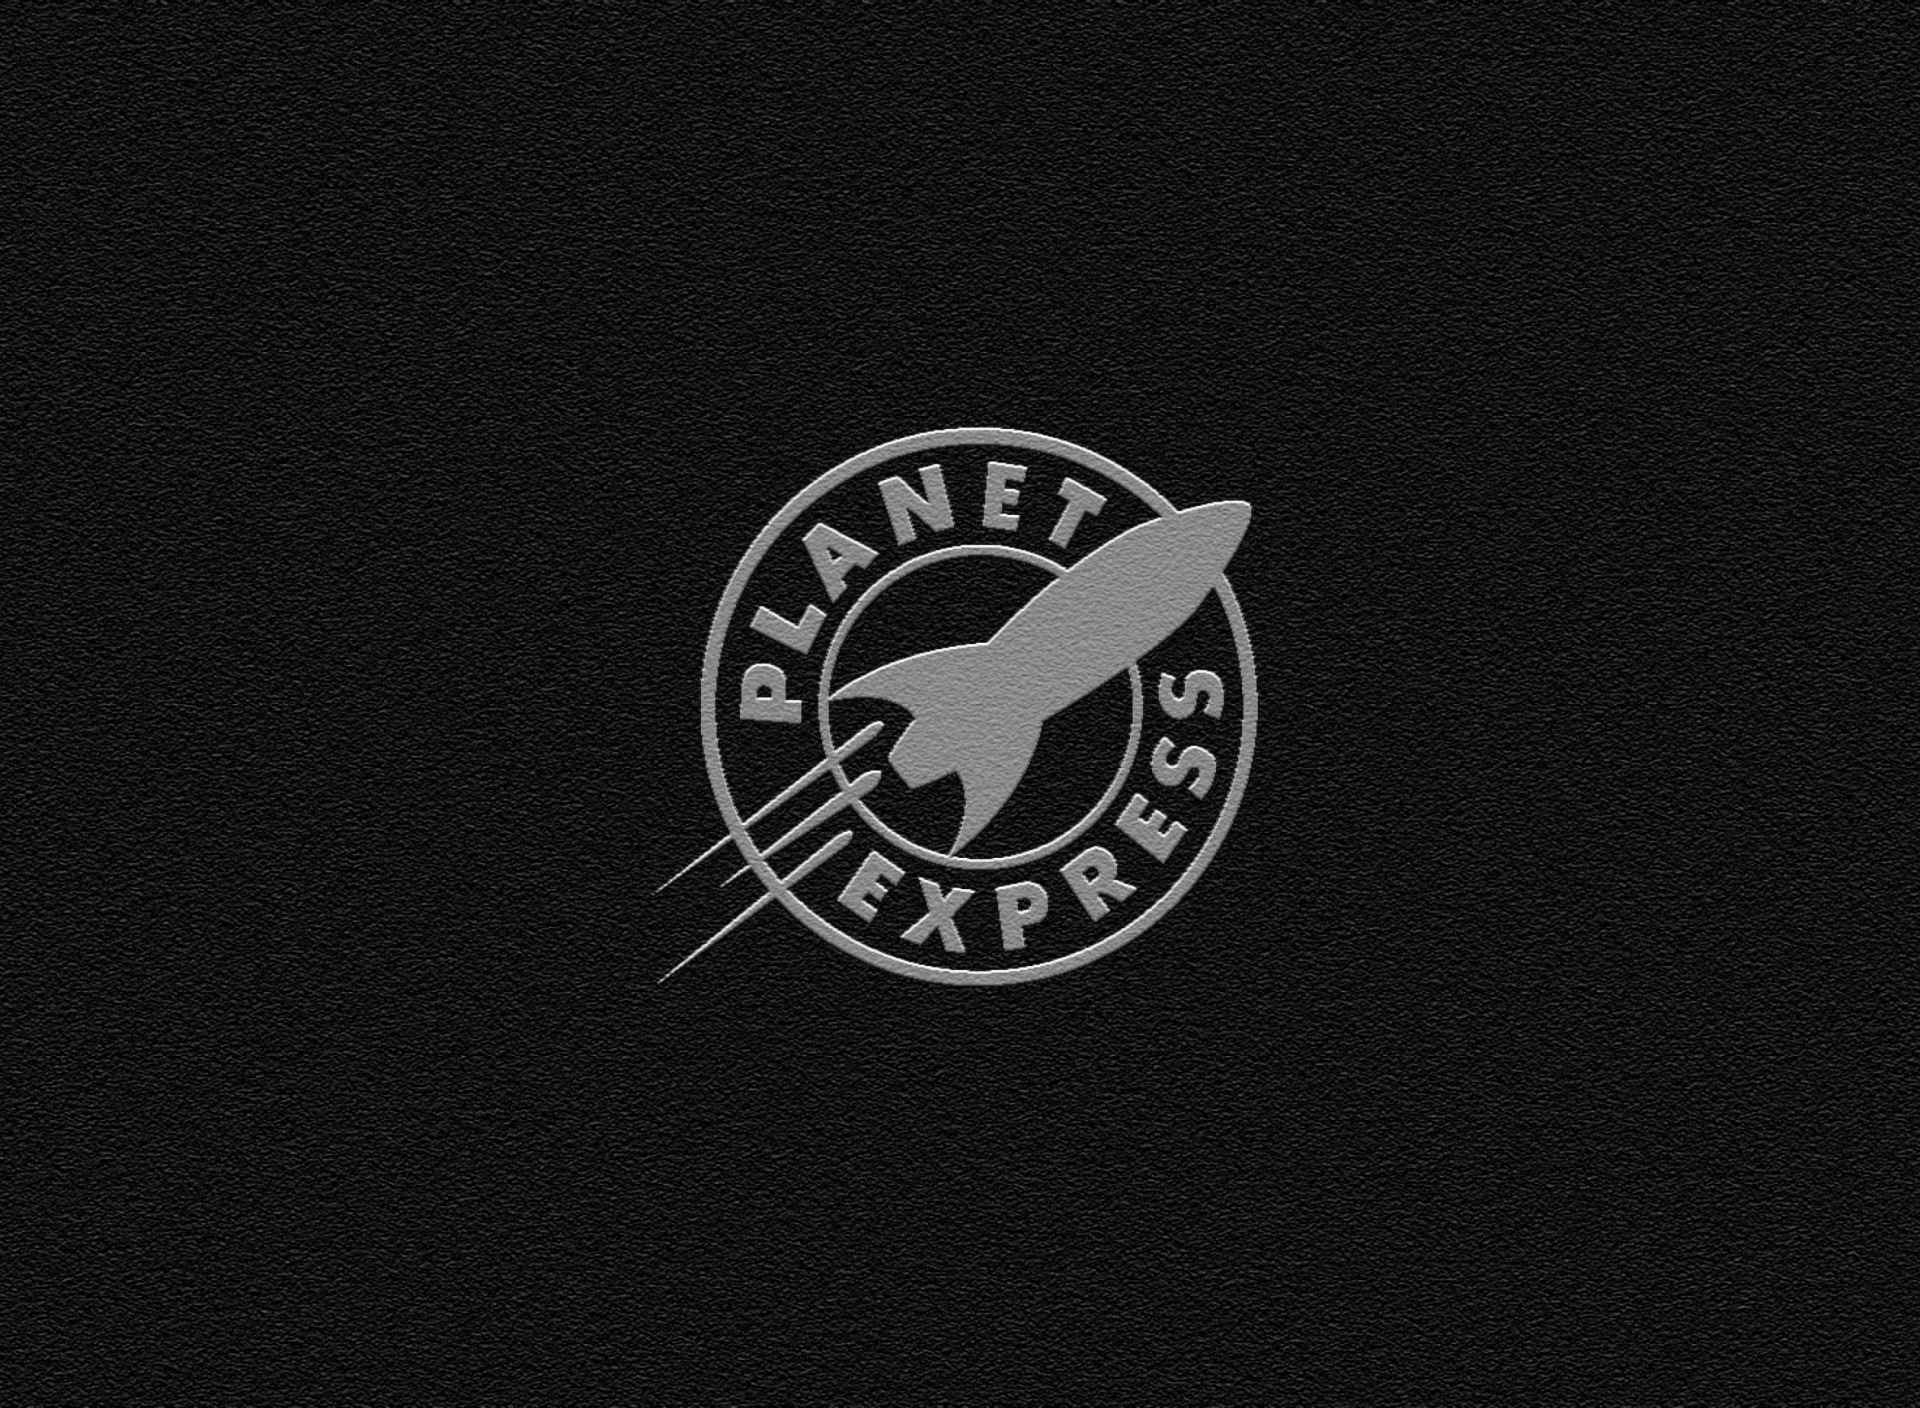 Обои Planet Express 1920x1408